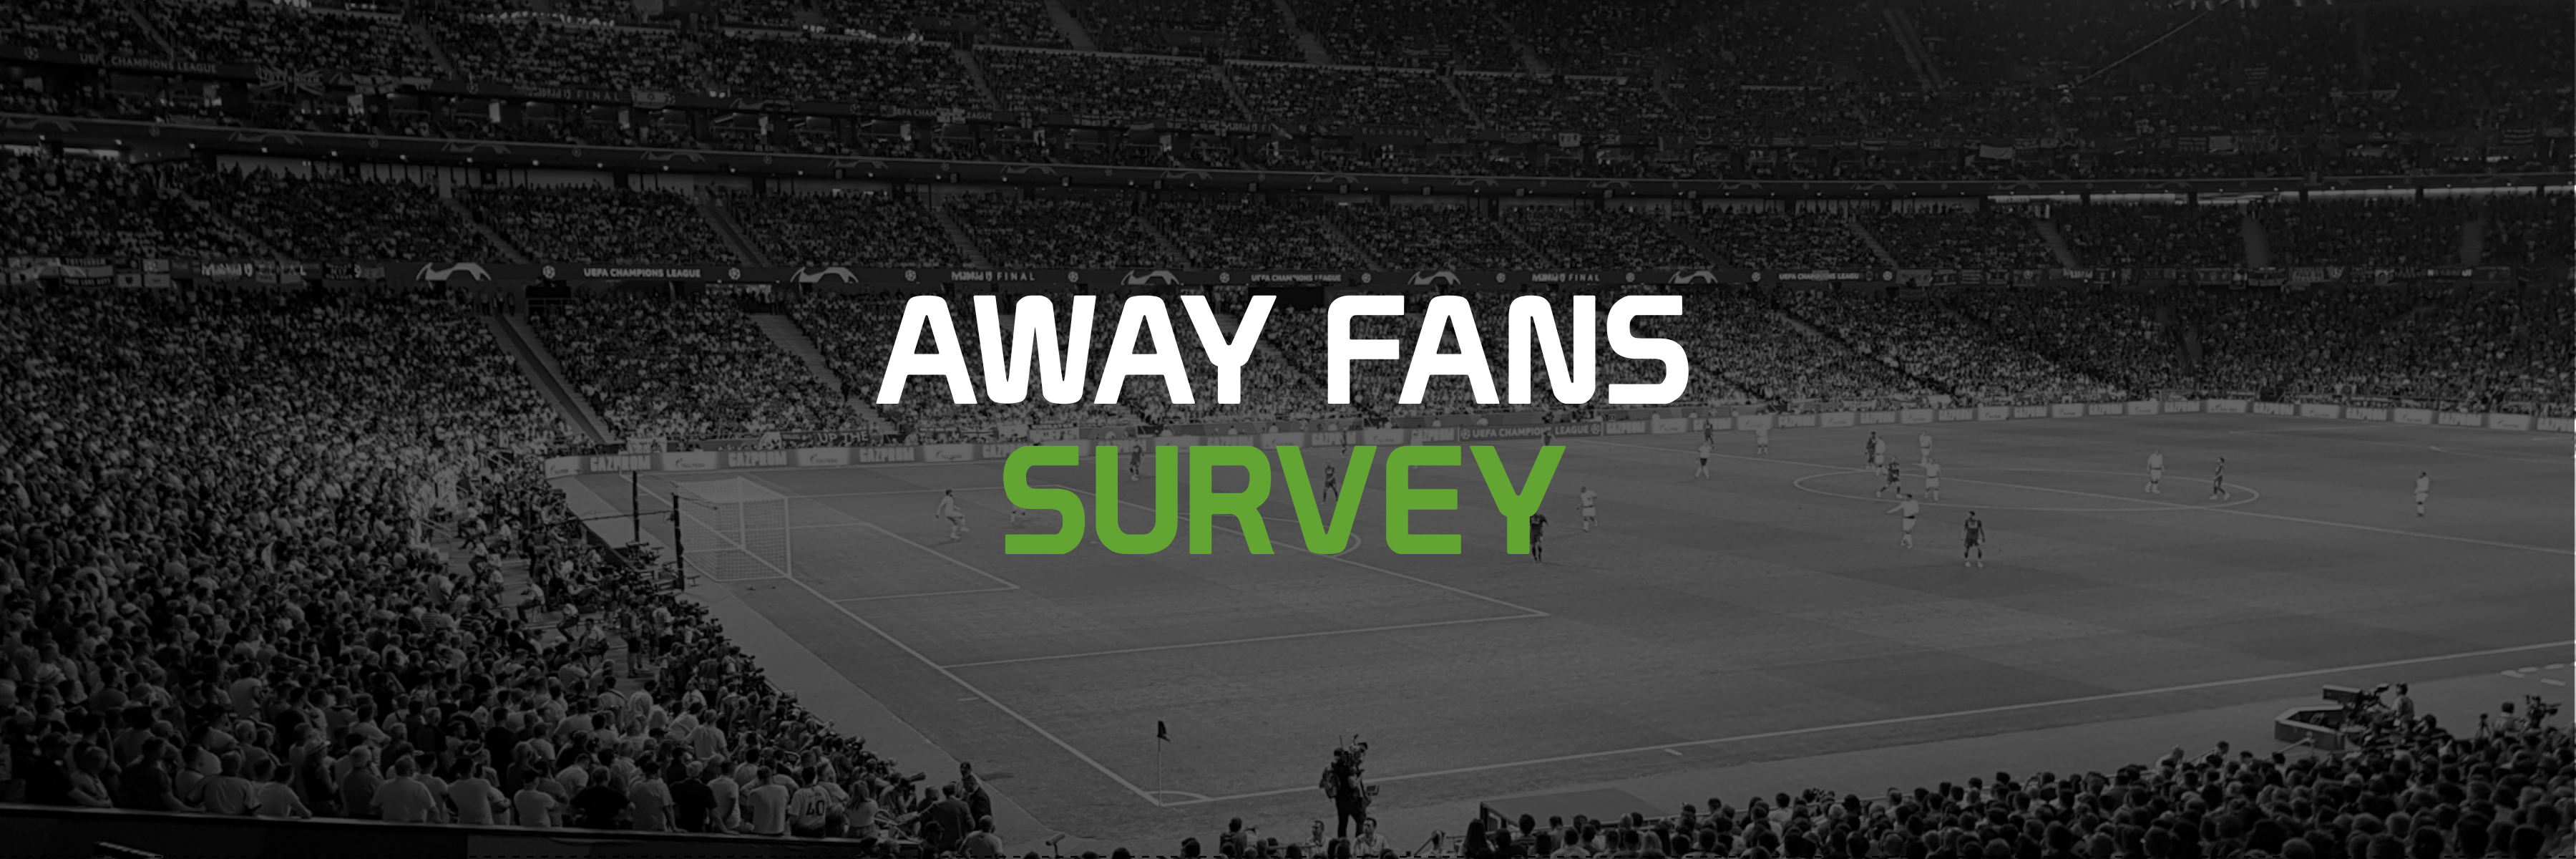 Away Fans Survey Banner